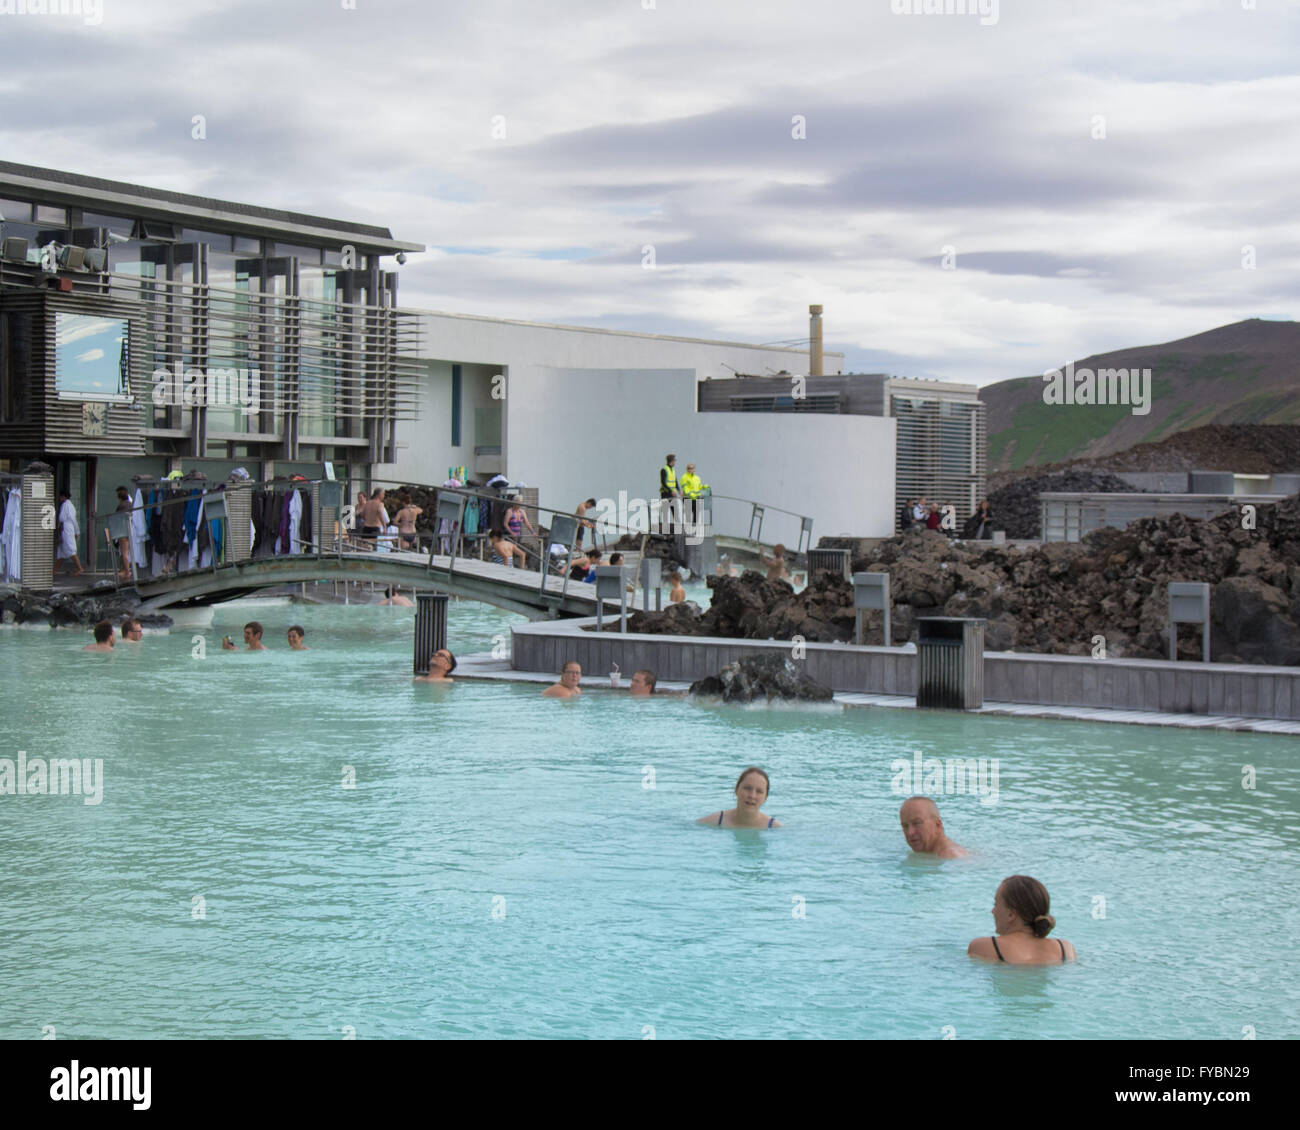 Península de Reykjanes, al suroeste de Islandia, Islandia. 5 ago, 2015. Los visitantes se bañan en el famoso Blue Lagoon Spa Geotermal situado en un campo de lava en GrindavÃ-k en la península de Reykjanes, al suroeste de Islandia. Las cálidas aguas son ricas en minerales y bañarse aquí es reputado para ayudar a personas con enfermedades de la piel. La laguna artificial está alimentado por la salida de la planta de energía geotérmica Svartsengi cercanos. Un destino turístico favorito, es uno de los lugares más visitados de Islandia, donde el turismo se ha convertido en un creciente sector de la economía. © Arnold Drapkin/Zuma alambre/Alamy Live News Foto de stock